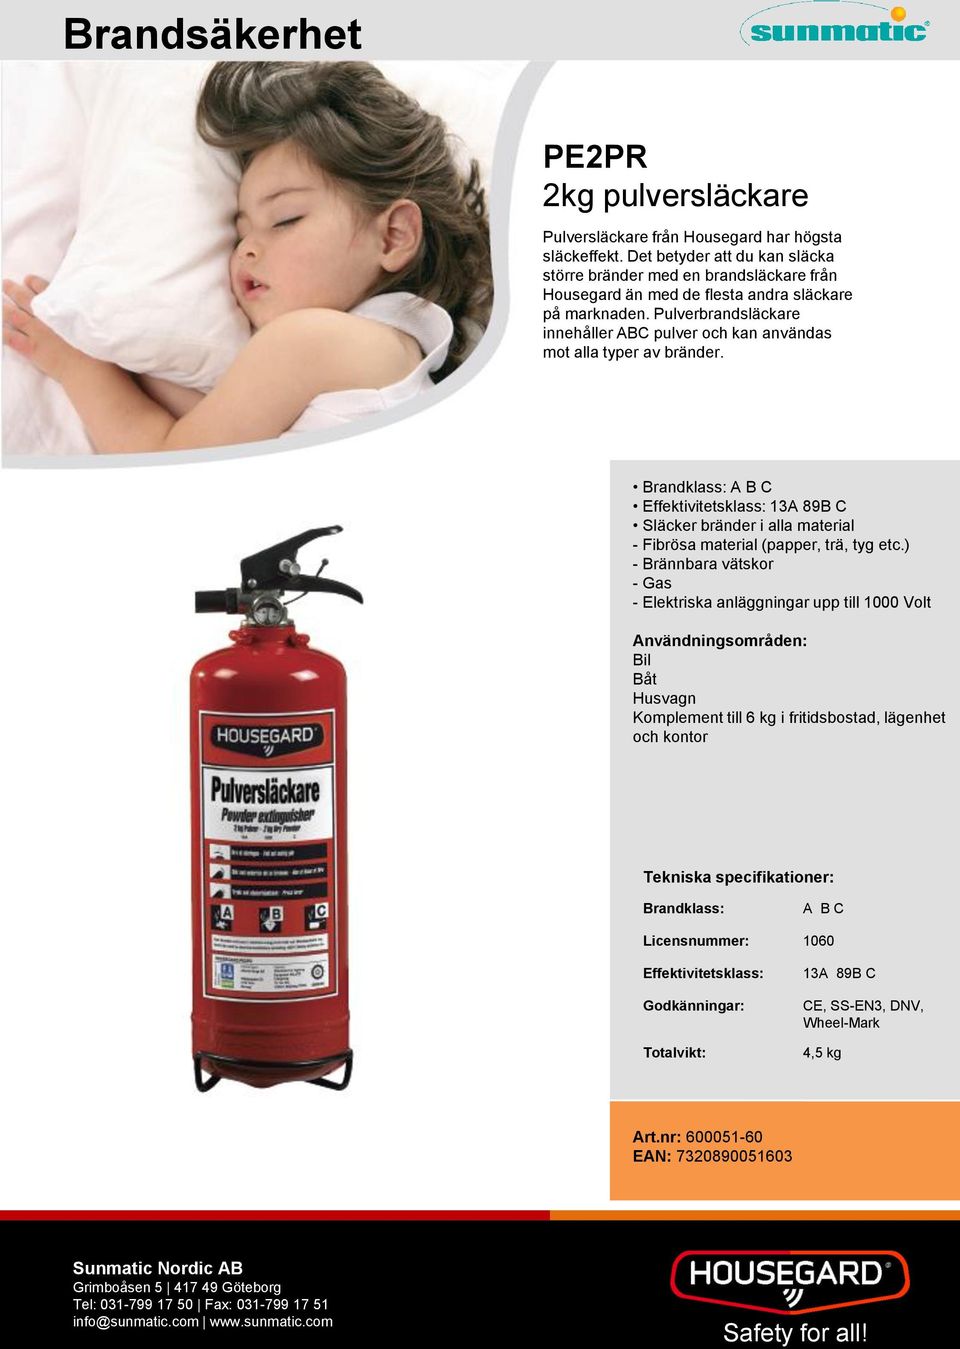 Pulverbrandsläckare innehåller ABC pulver och kan användas mot alla typer av bränder.